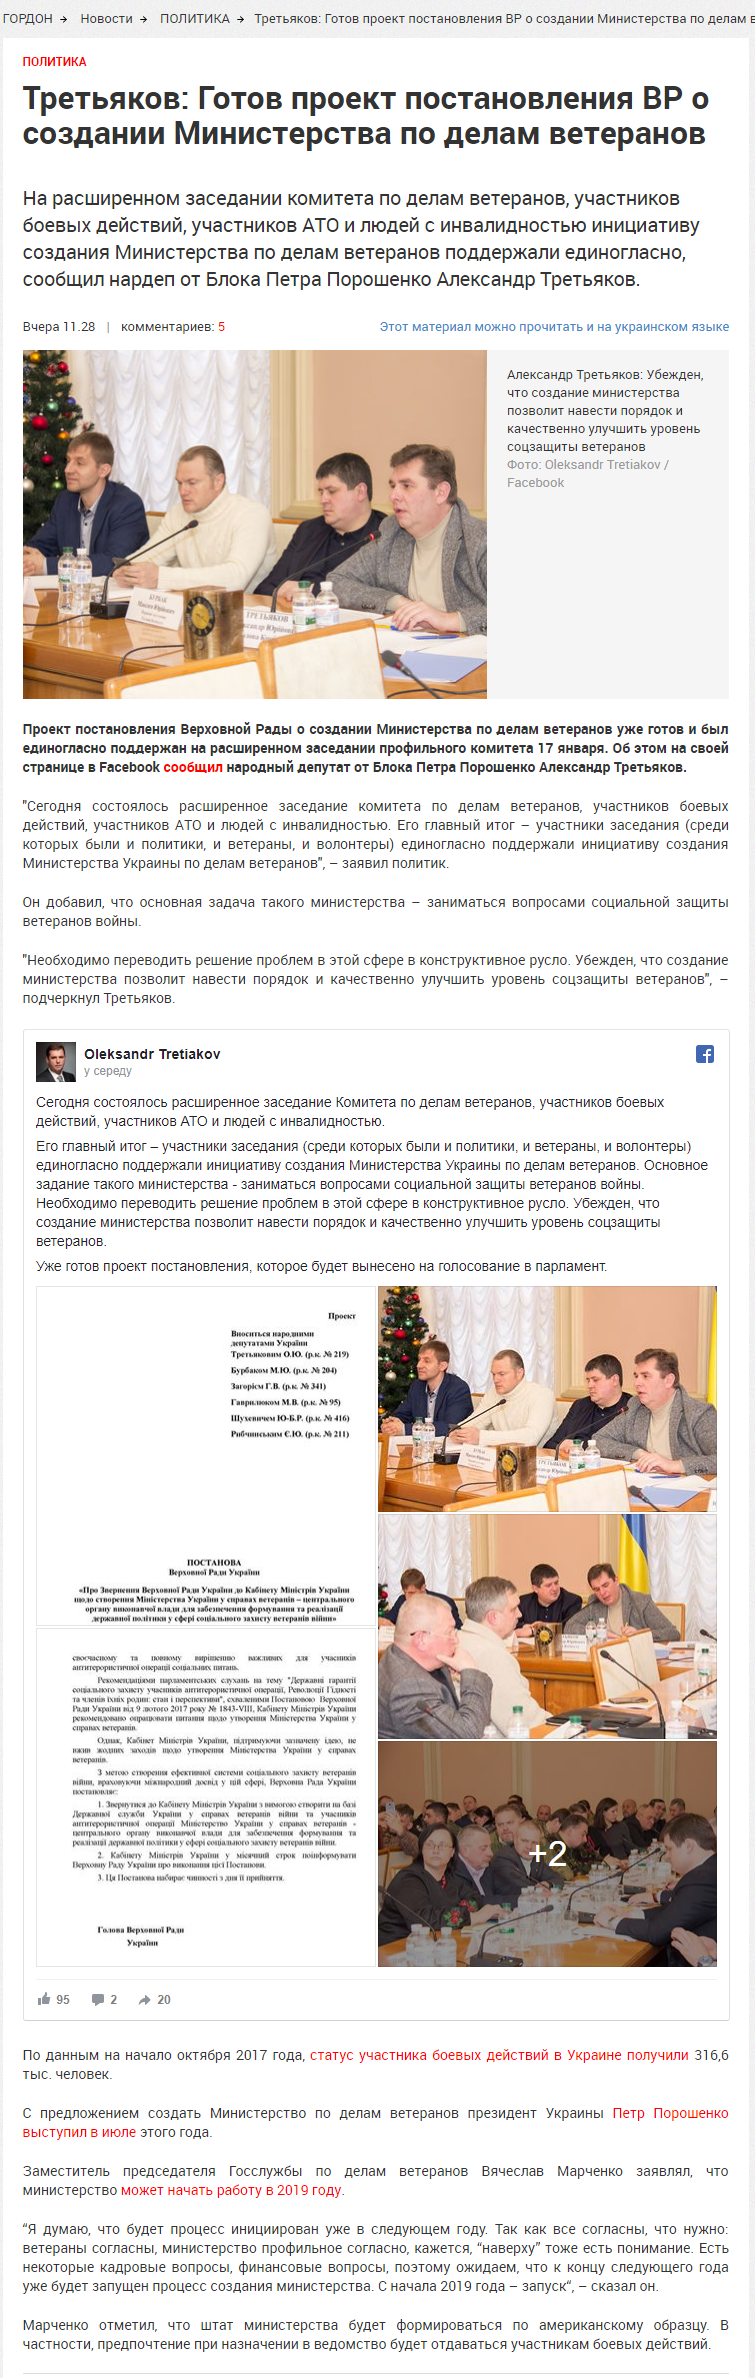 http://gordonua.com/news/politics/tretyakov-gotov-proekt-postanovleniya-vr-o-sozdanii-ministerstva-po-delam-veteranov-227509.html